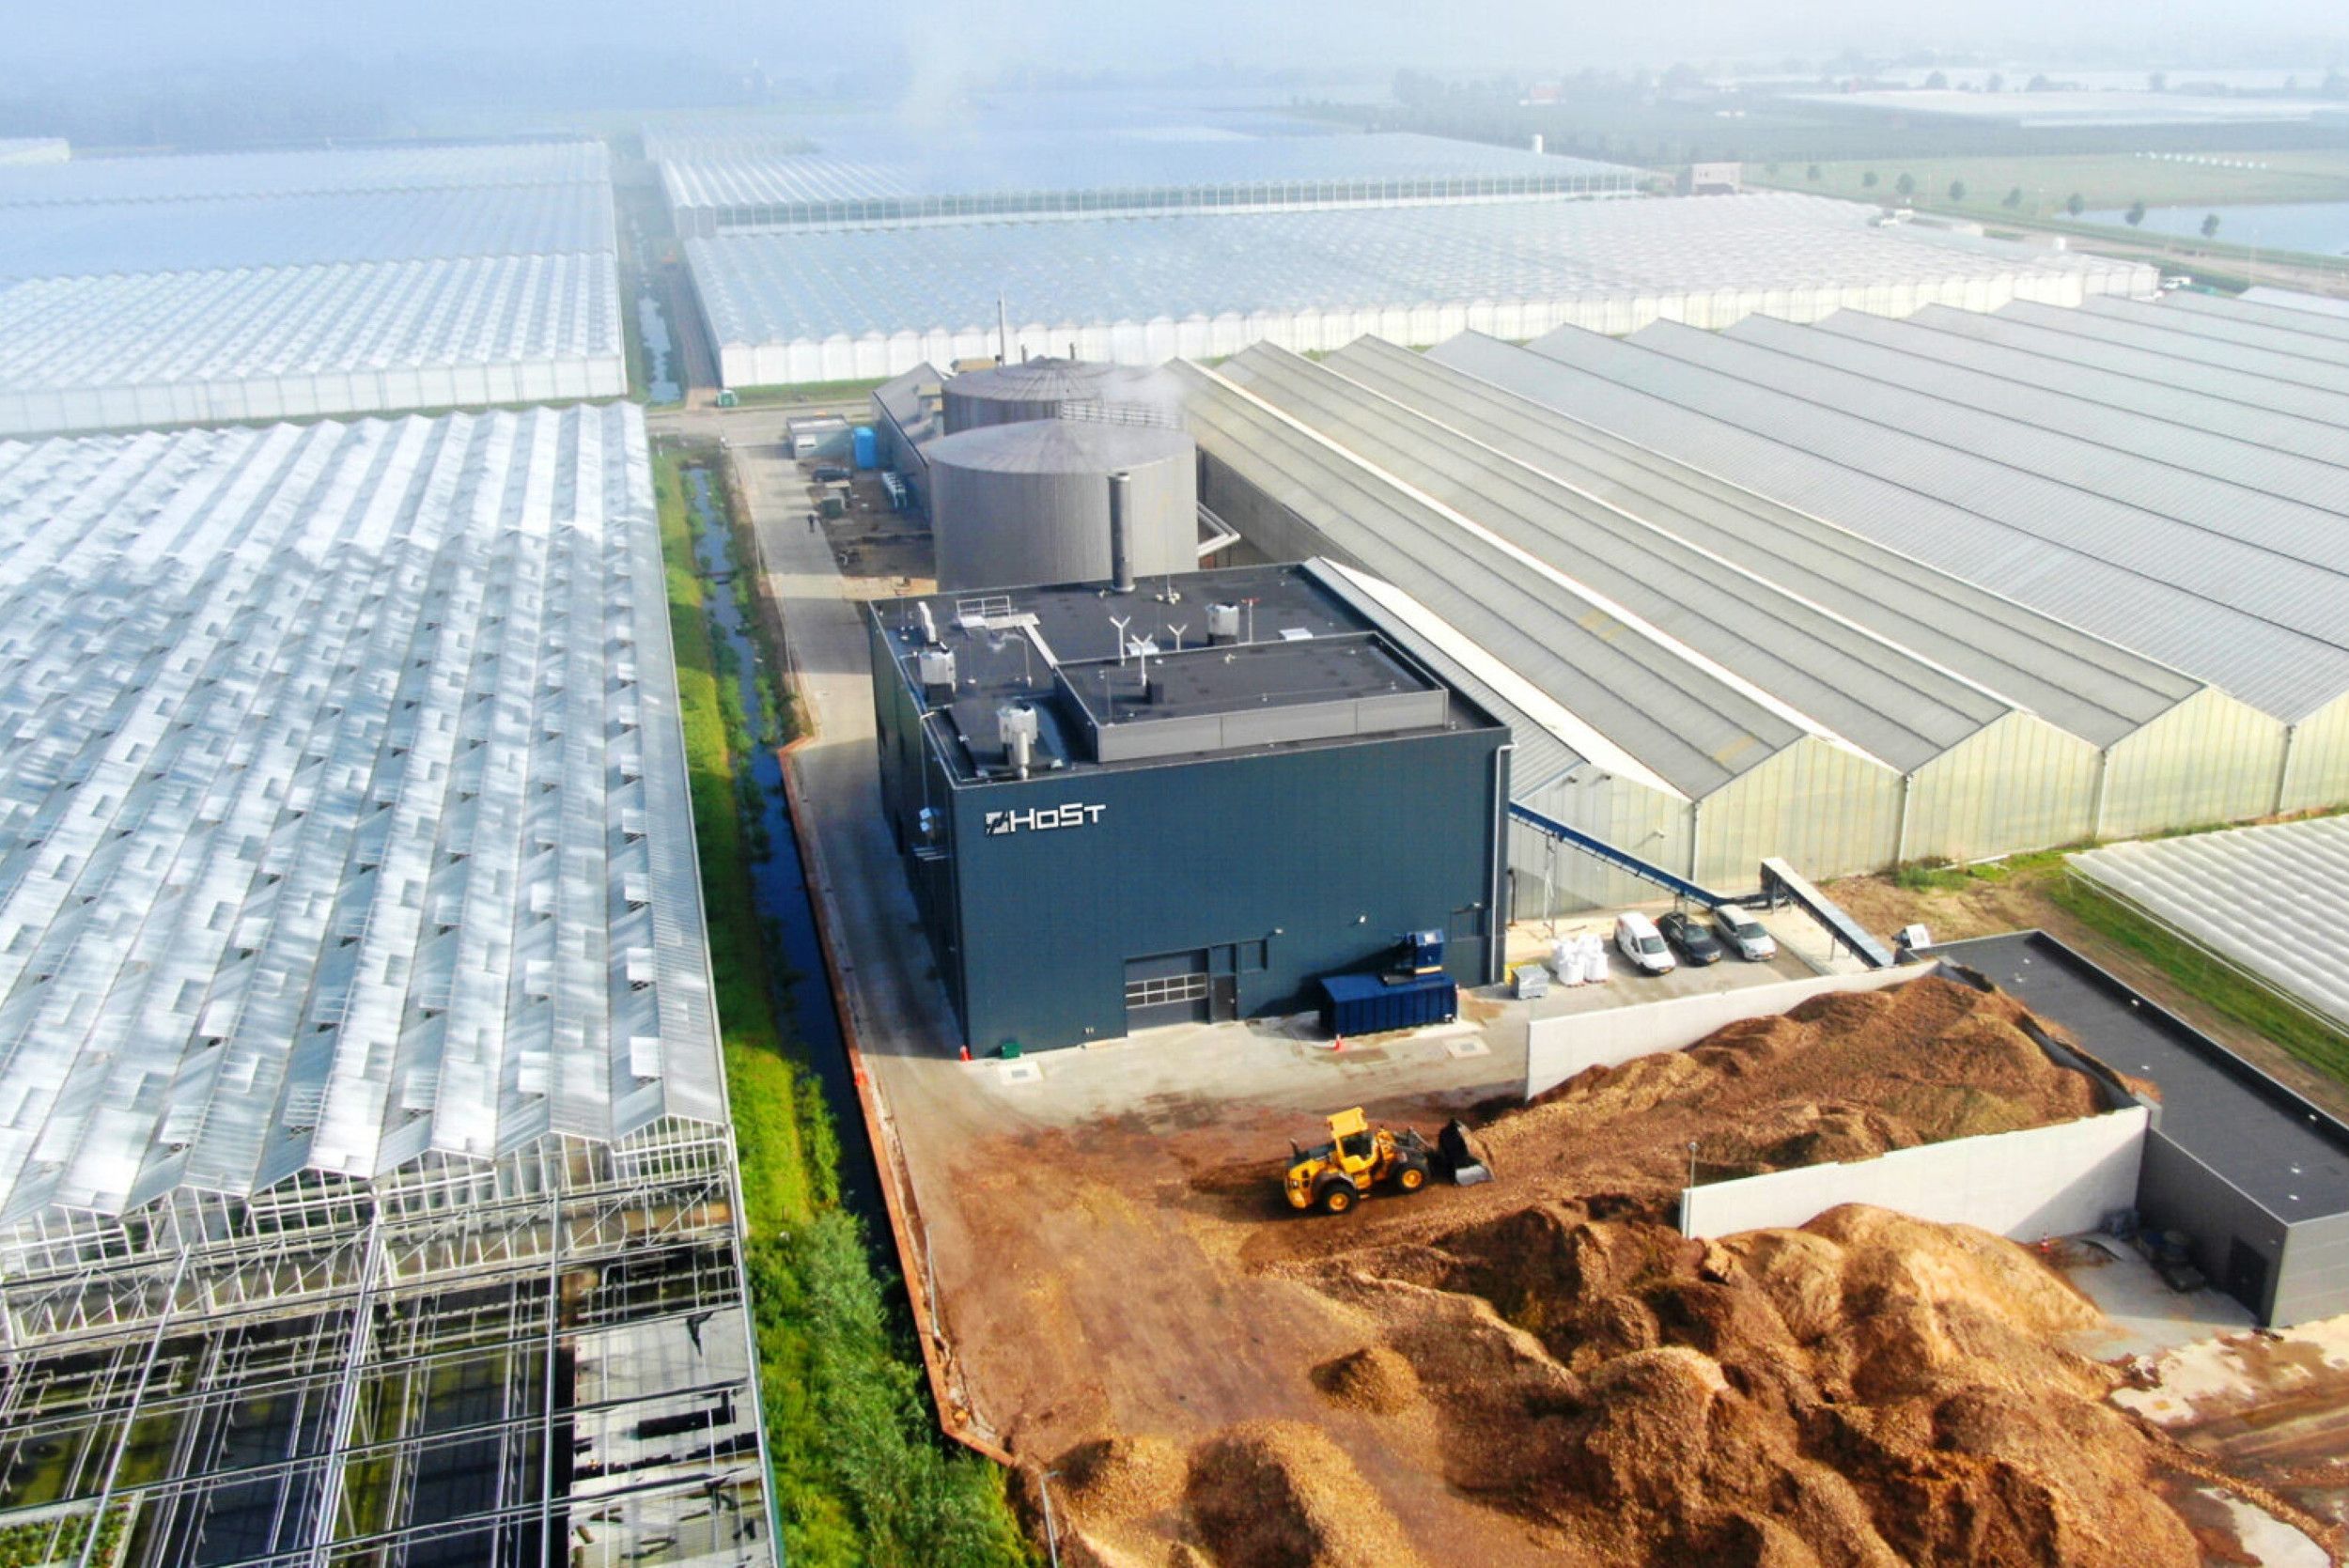 De biomassacentrale van Host levert warmte aan zestien bedrijven, maar kan nog veel meer warmte leveren aan bedrijven bij een uitgebreid warmtenet. Foto: Host